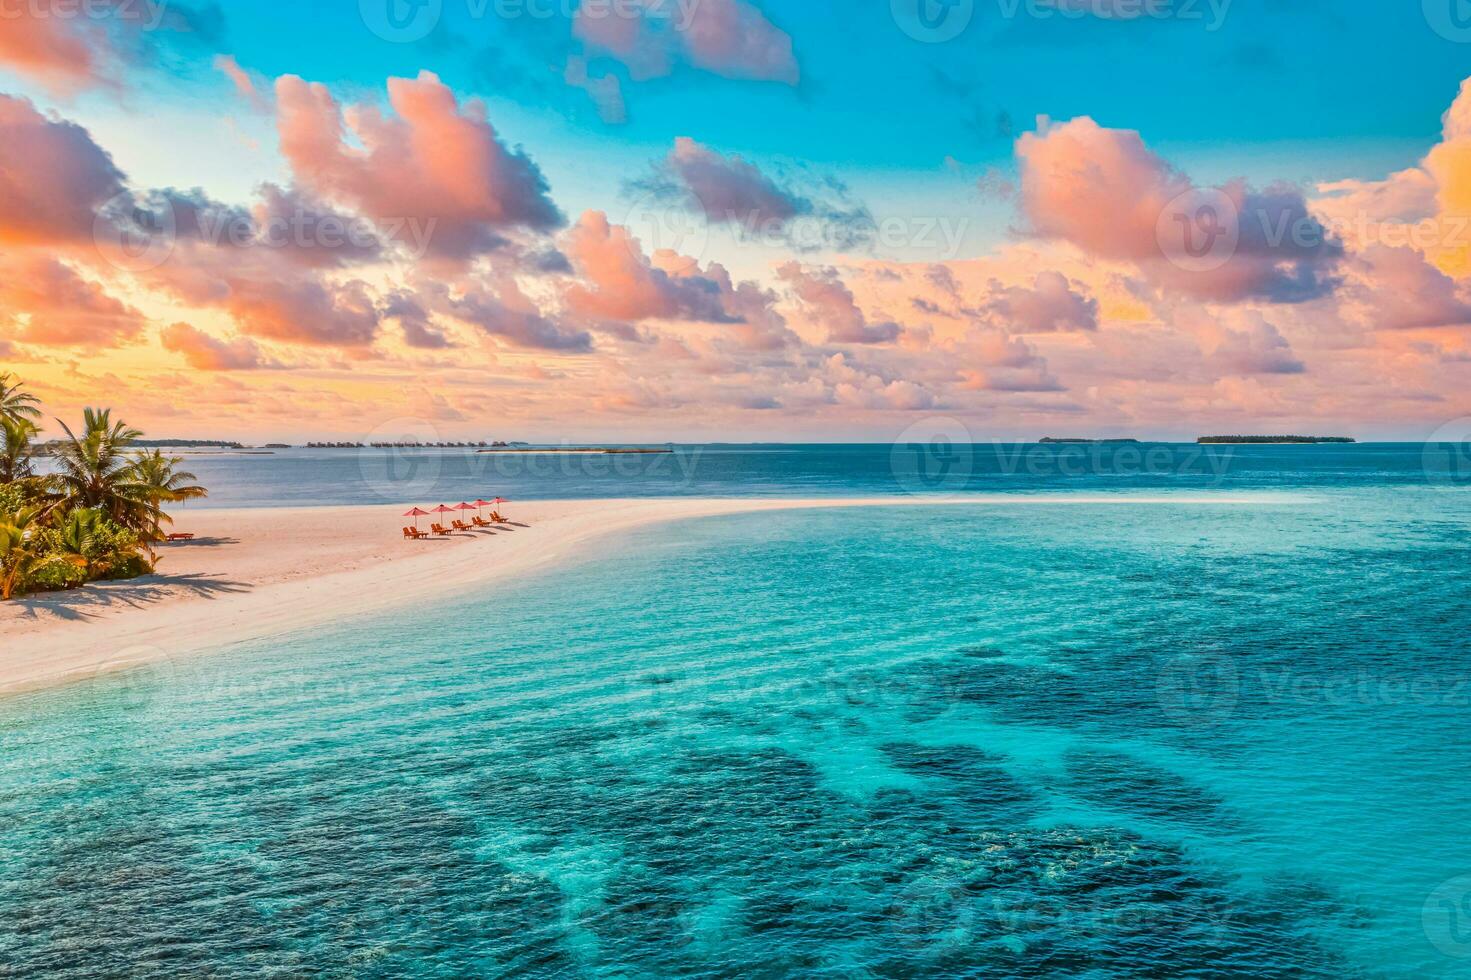 antenn se av Fantastisk strand, par paraplyer, stolar sängar stänga till hav lagun. fantastisk himmel moln sommar strand landskap. idyllisk natur för inspirera turism semester, romantisk Semester i maldiverna foto